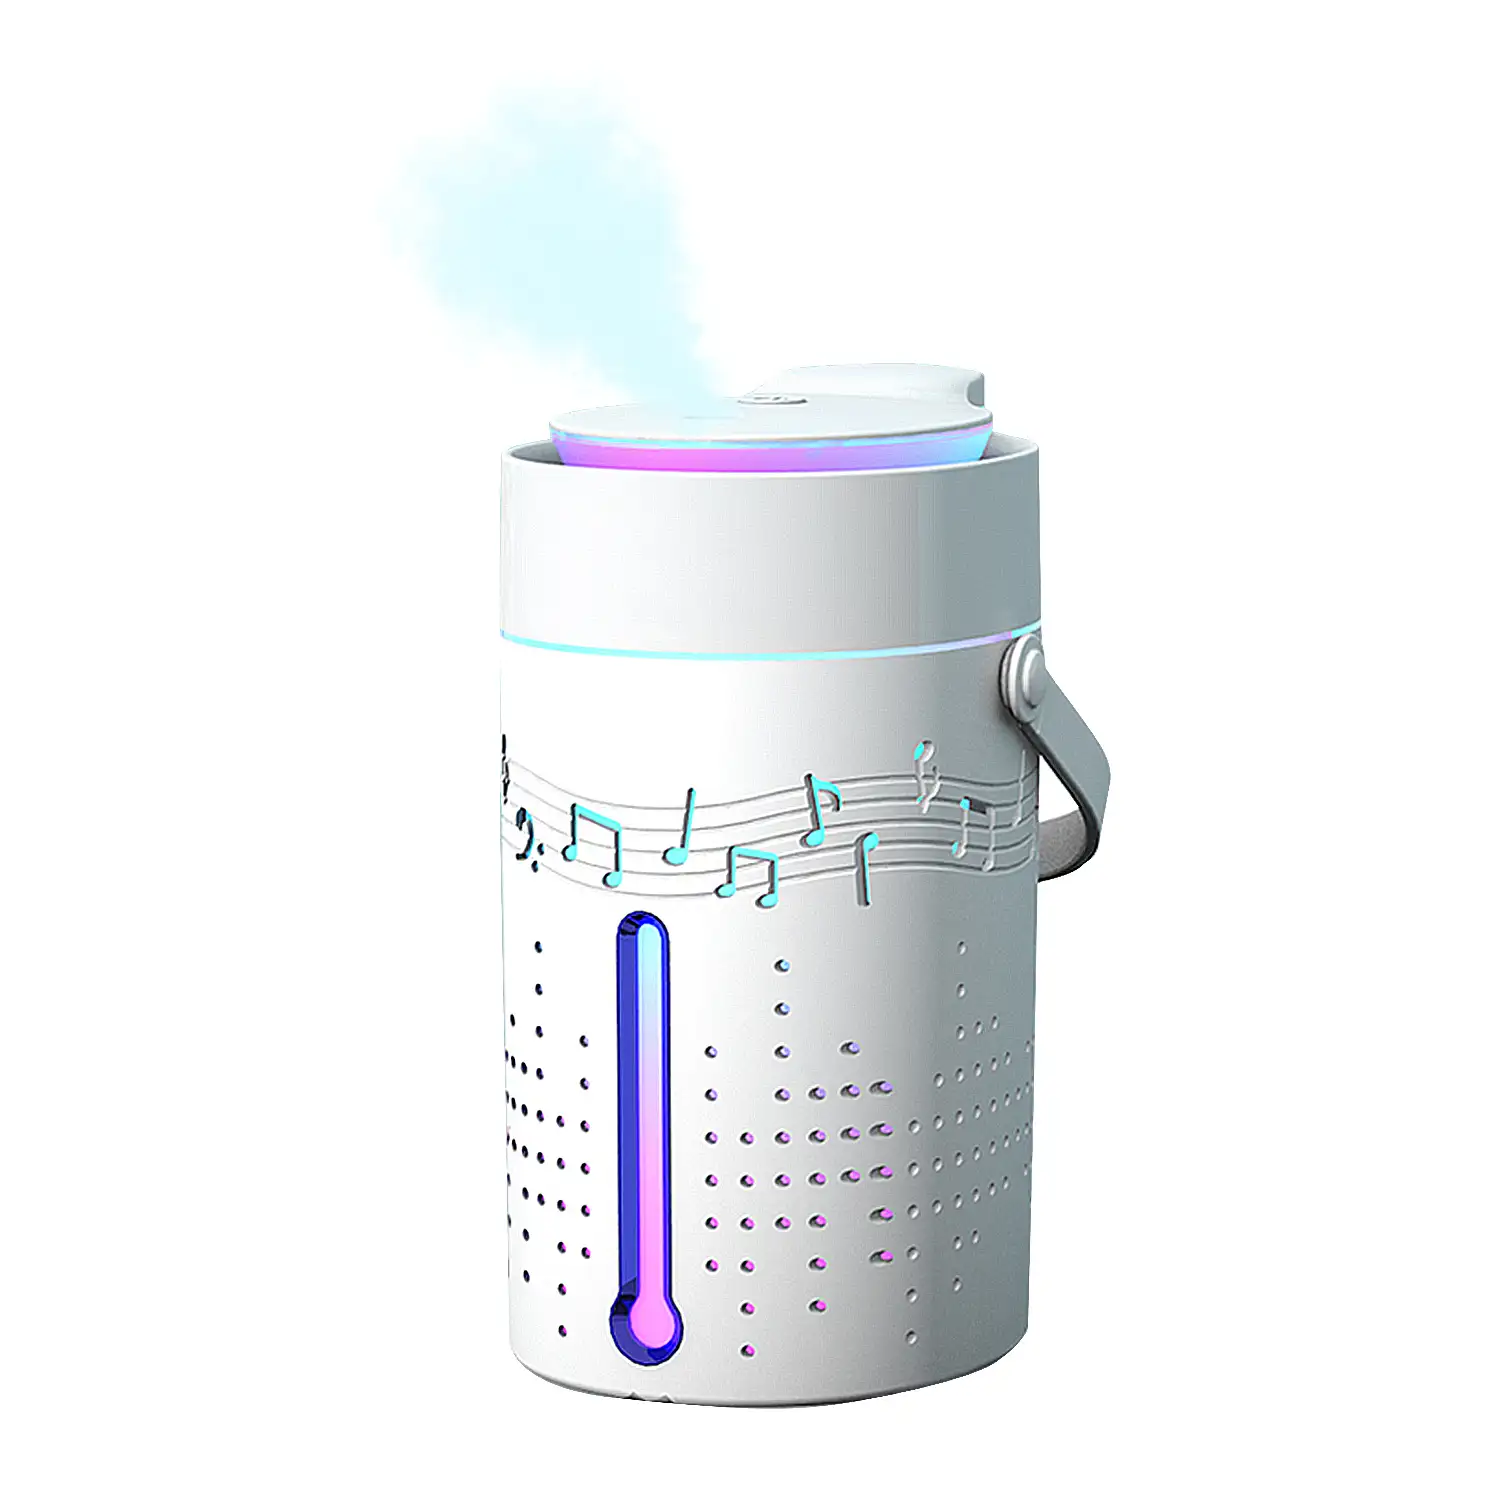 Nebulizador esterilizador multifunción (admite hidroalcohol) 1000 ml.